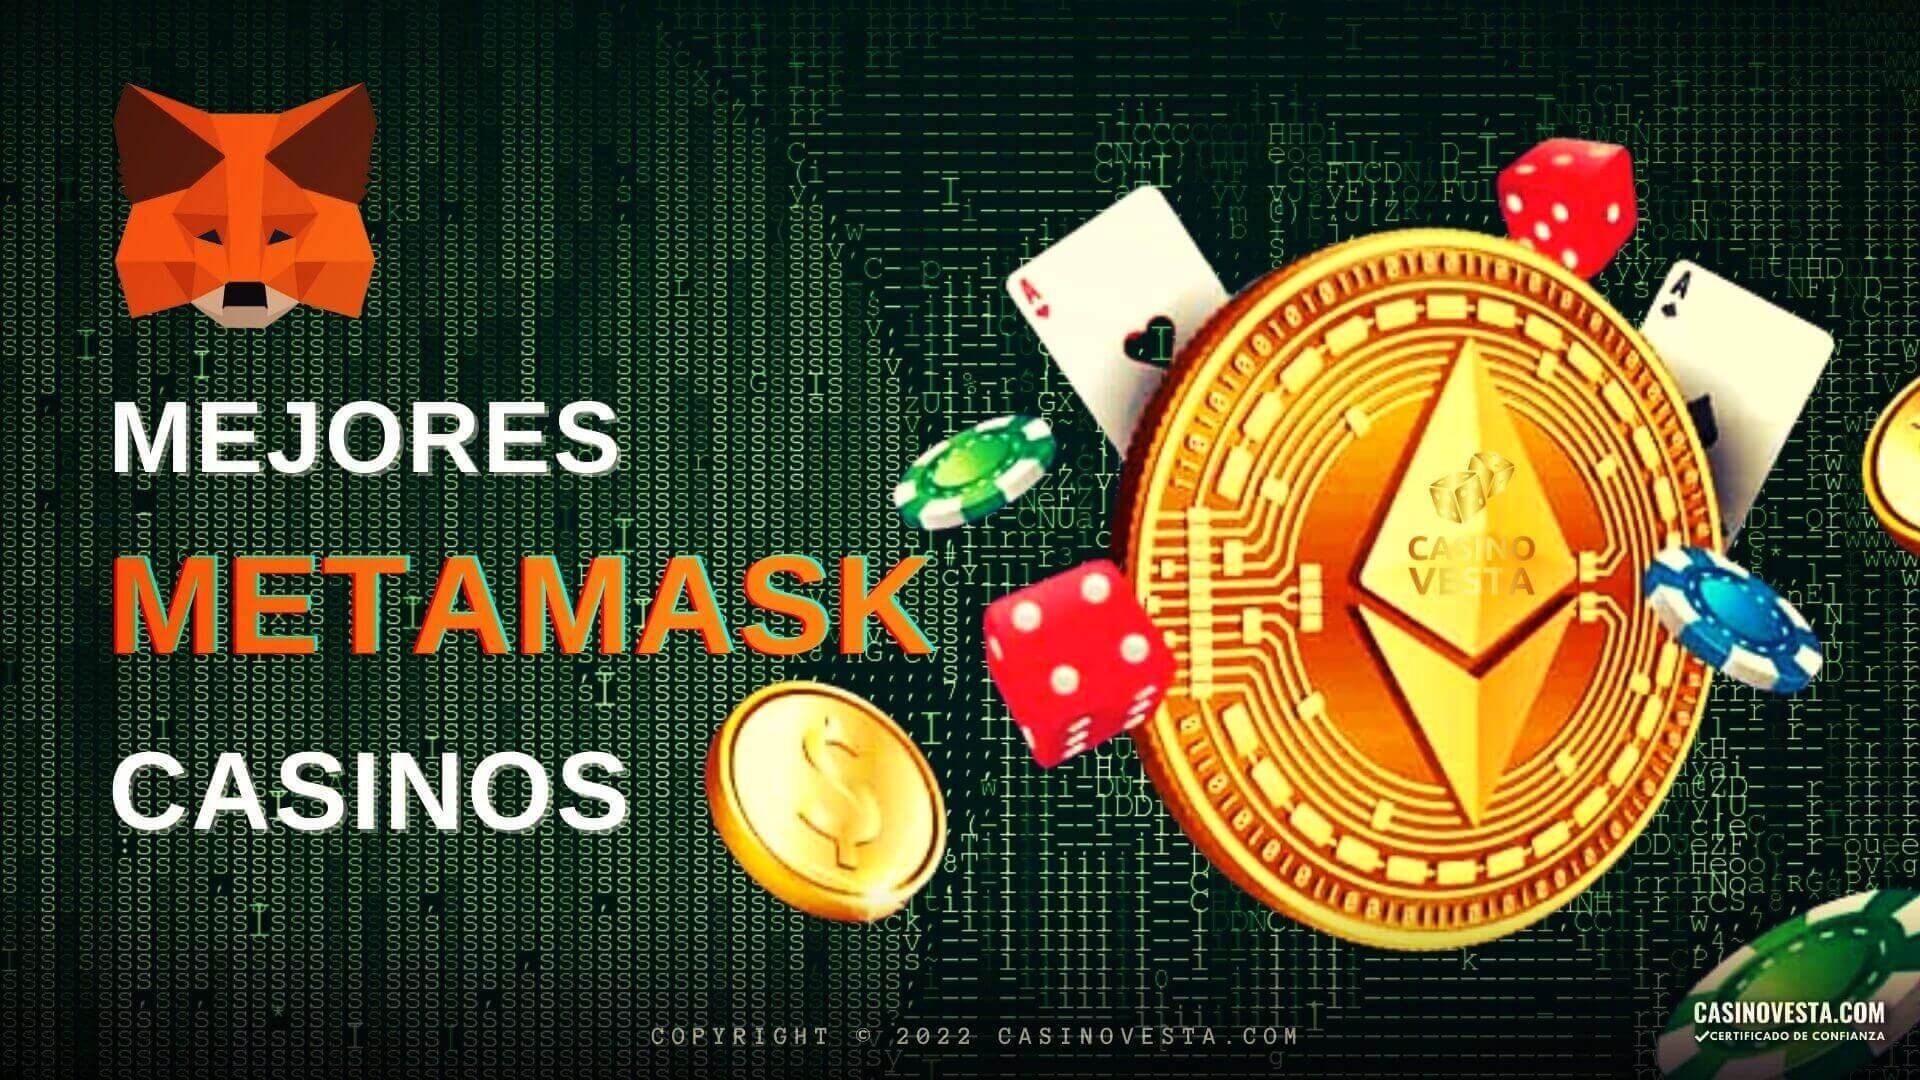 Metamask Casinos Online y Juegos de Azar Descentralizados